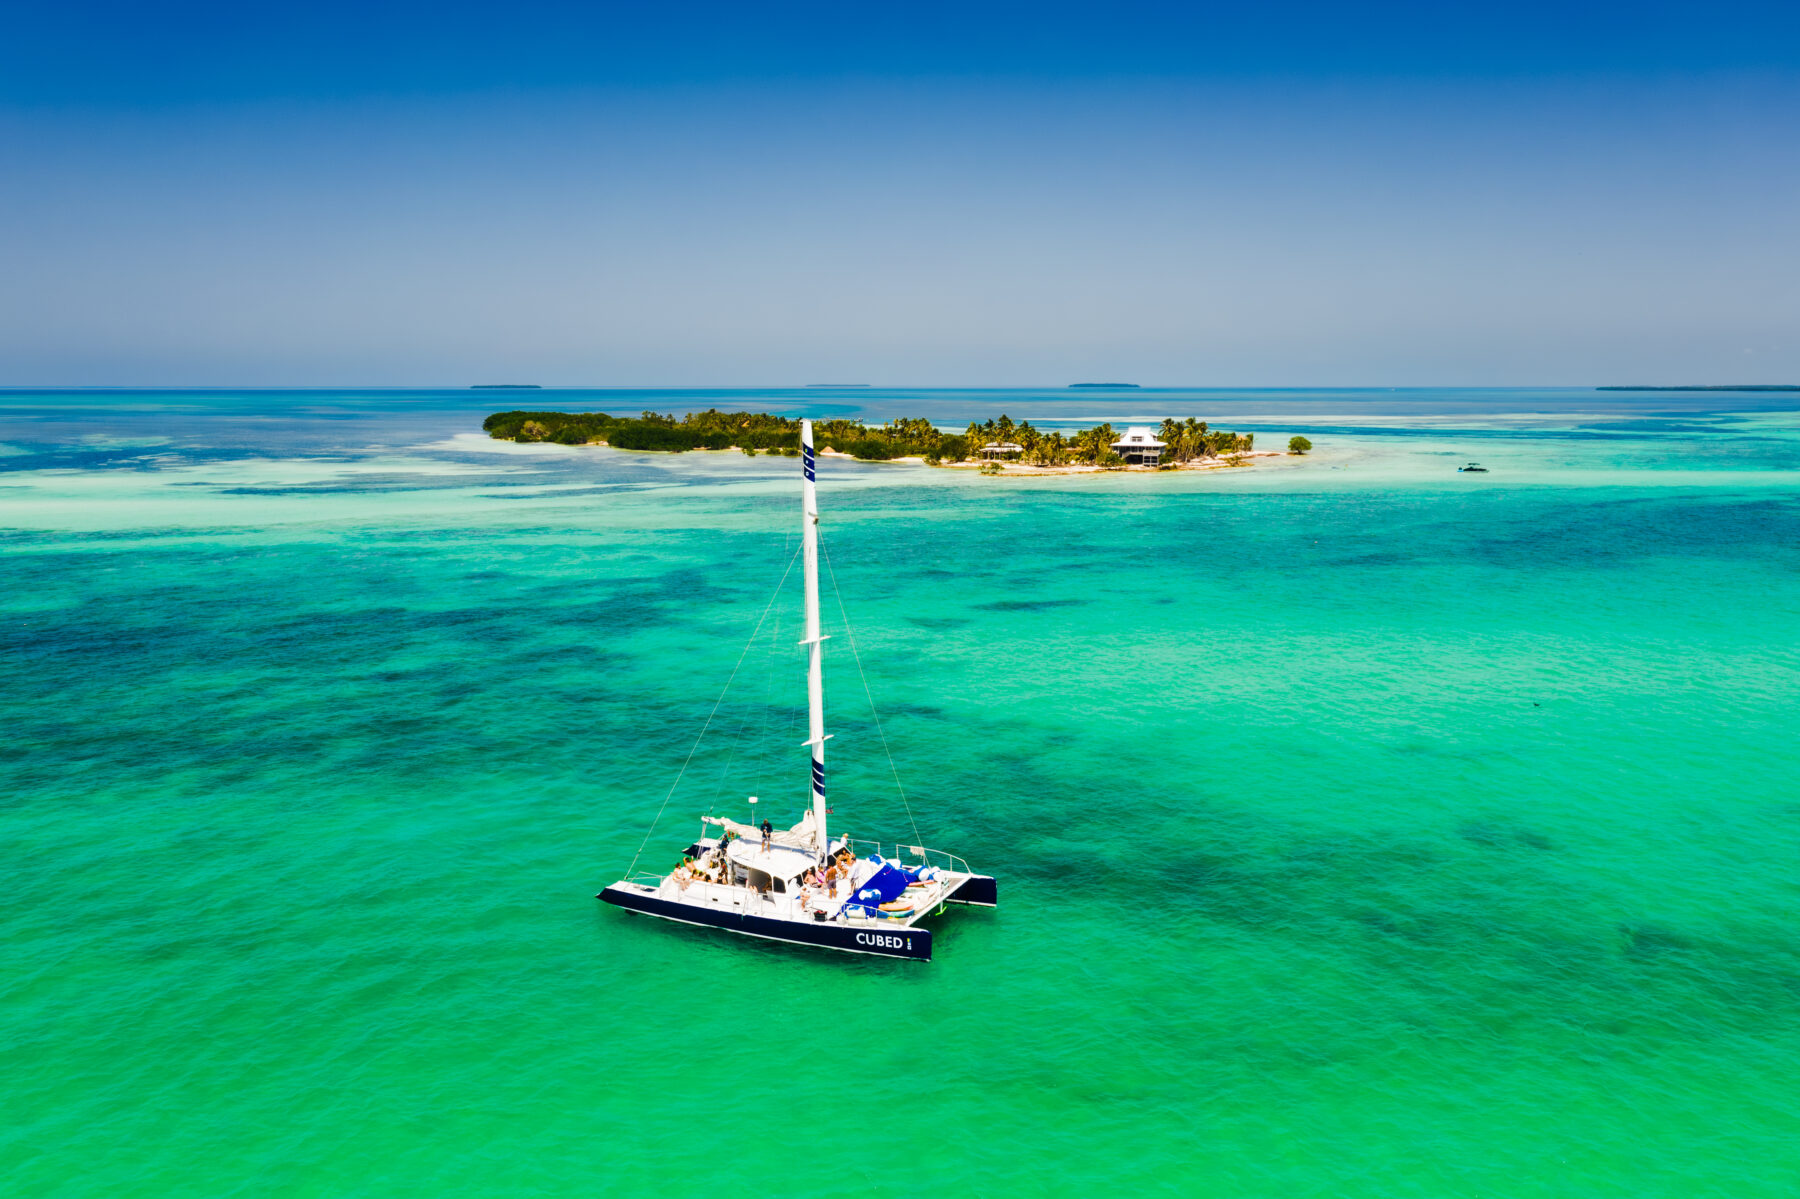 The Ultimate Key West Getaway with Sebago Watersports - Travel Dreams ...